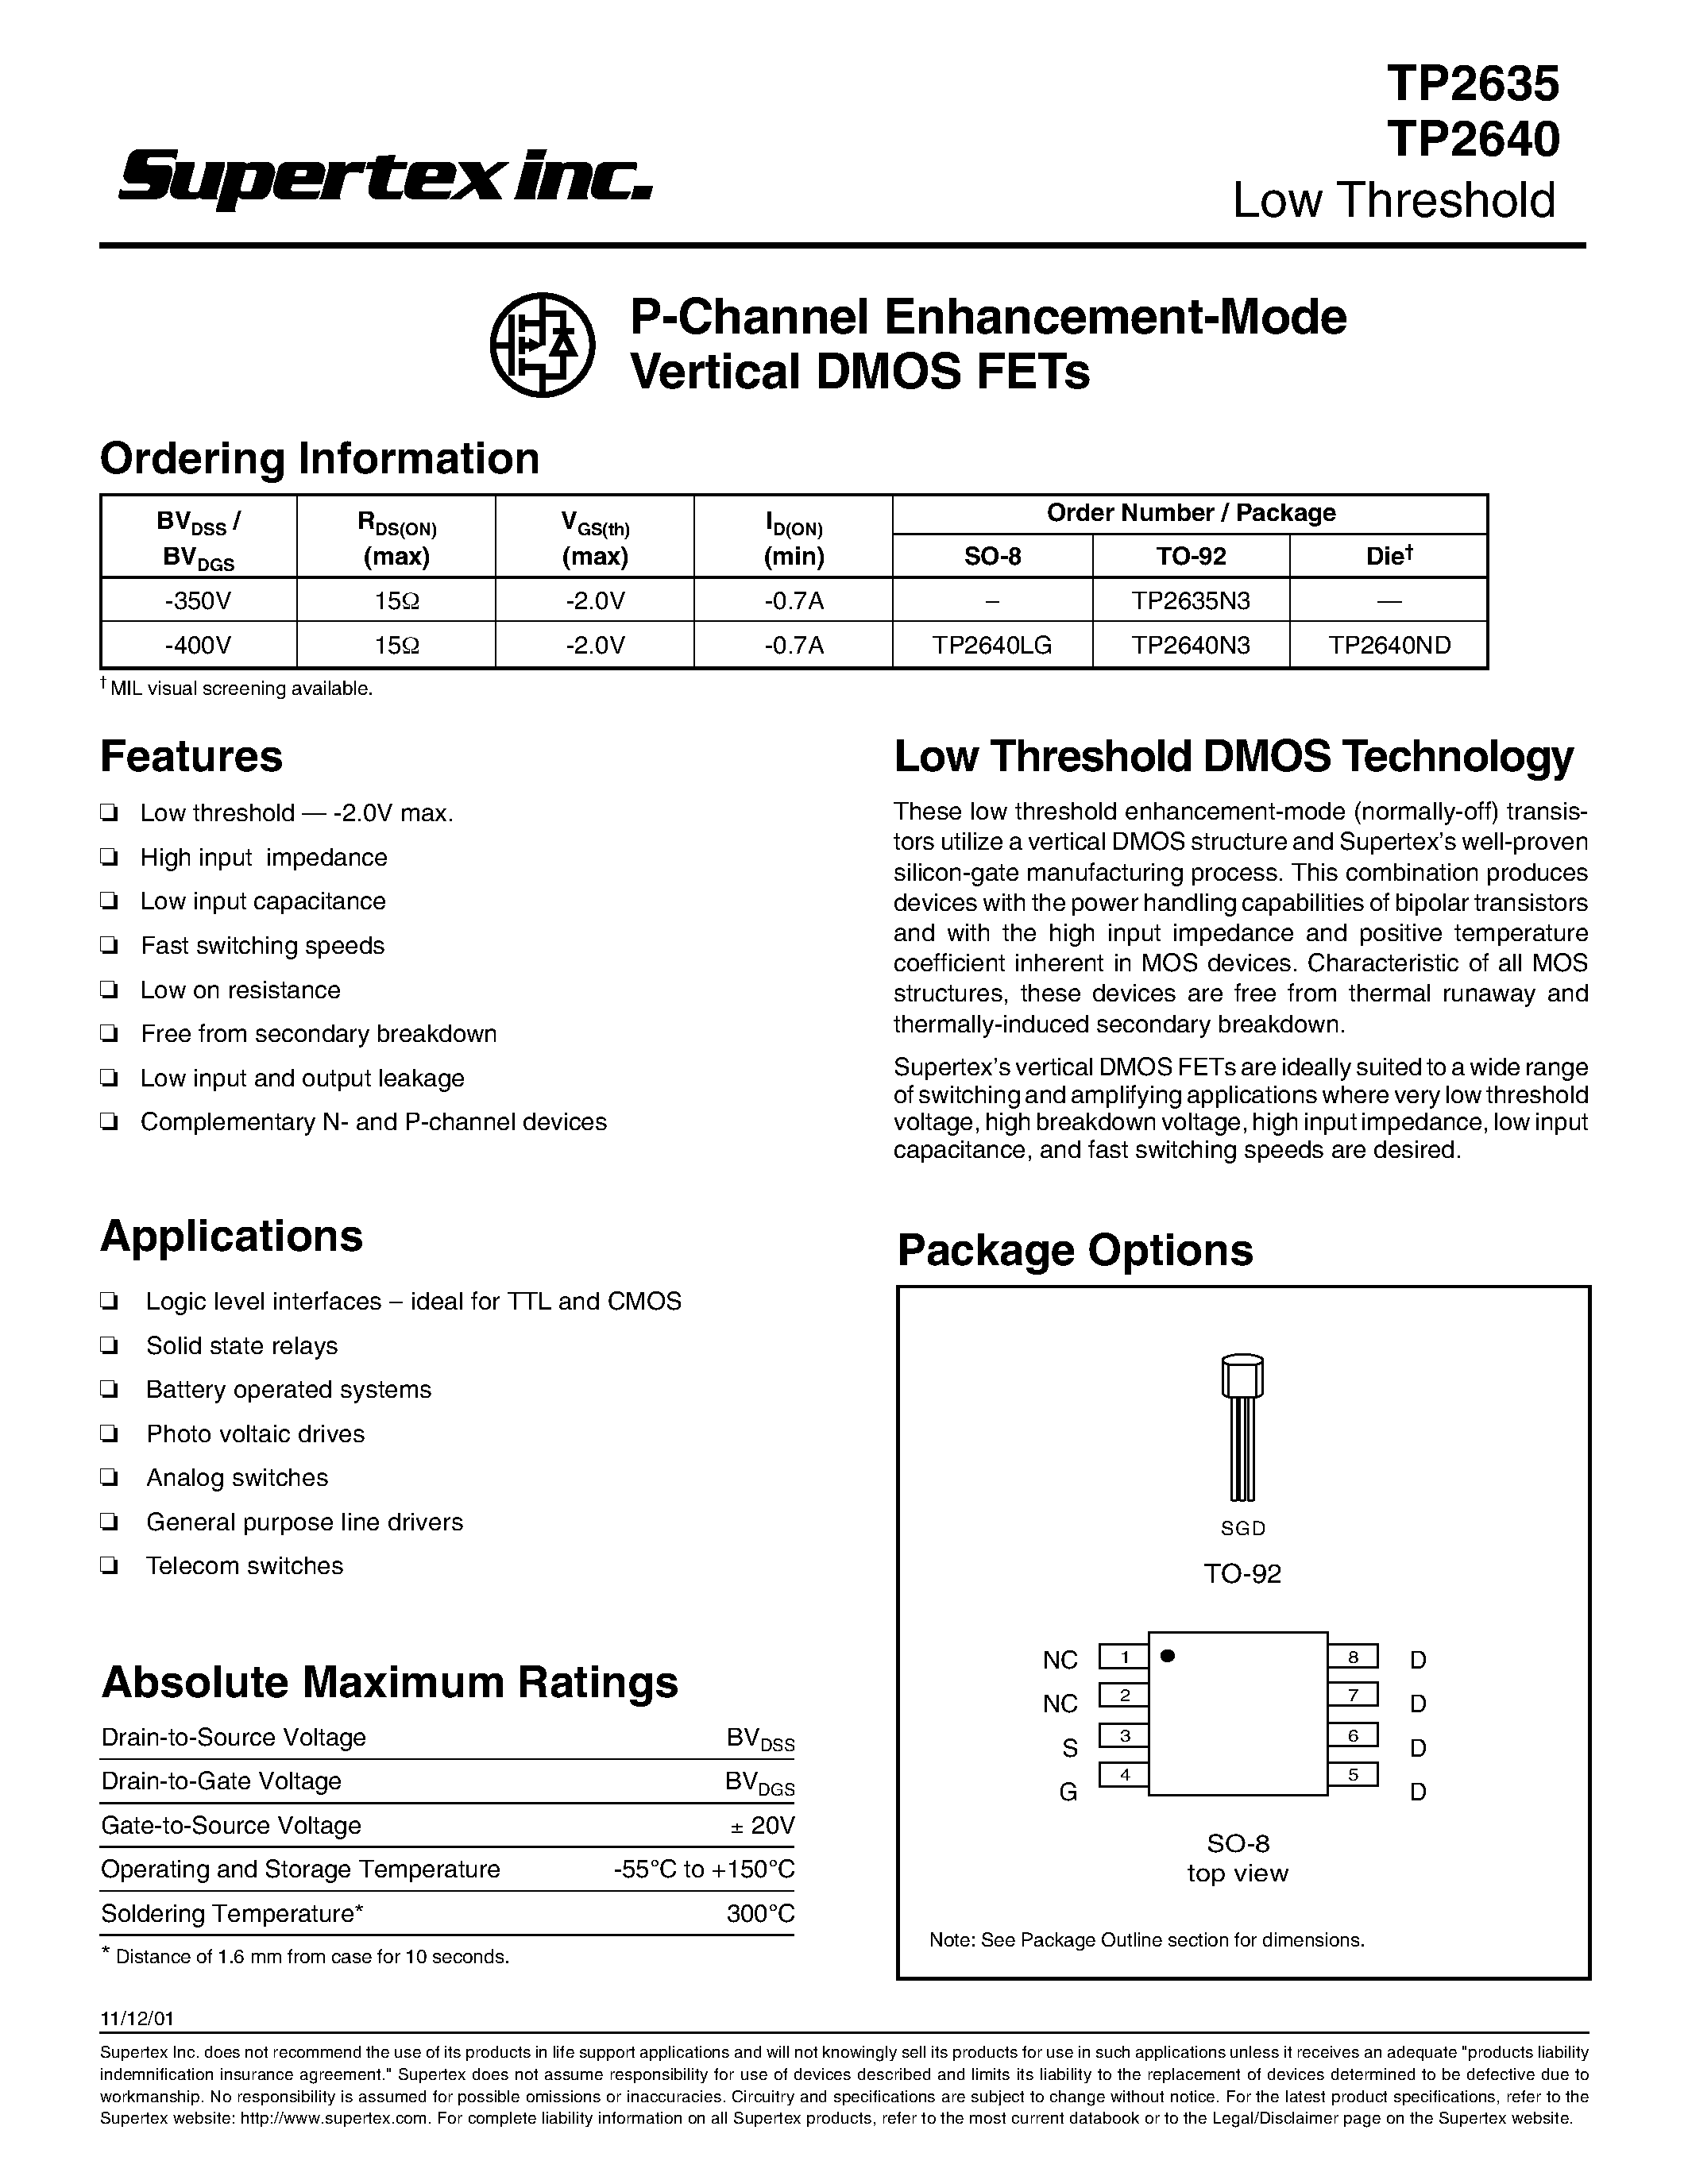 Даташит TP2640 - P-Channel Enhancement-Mode Vertical DMOS FETs страница 1